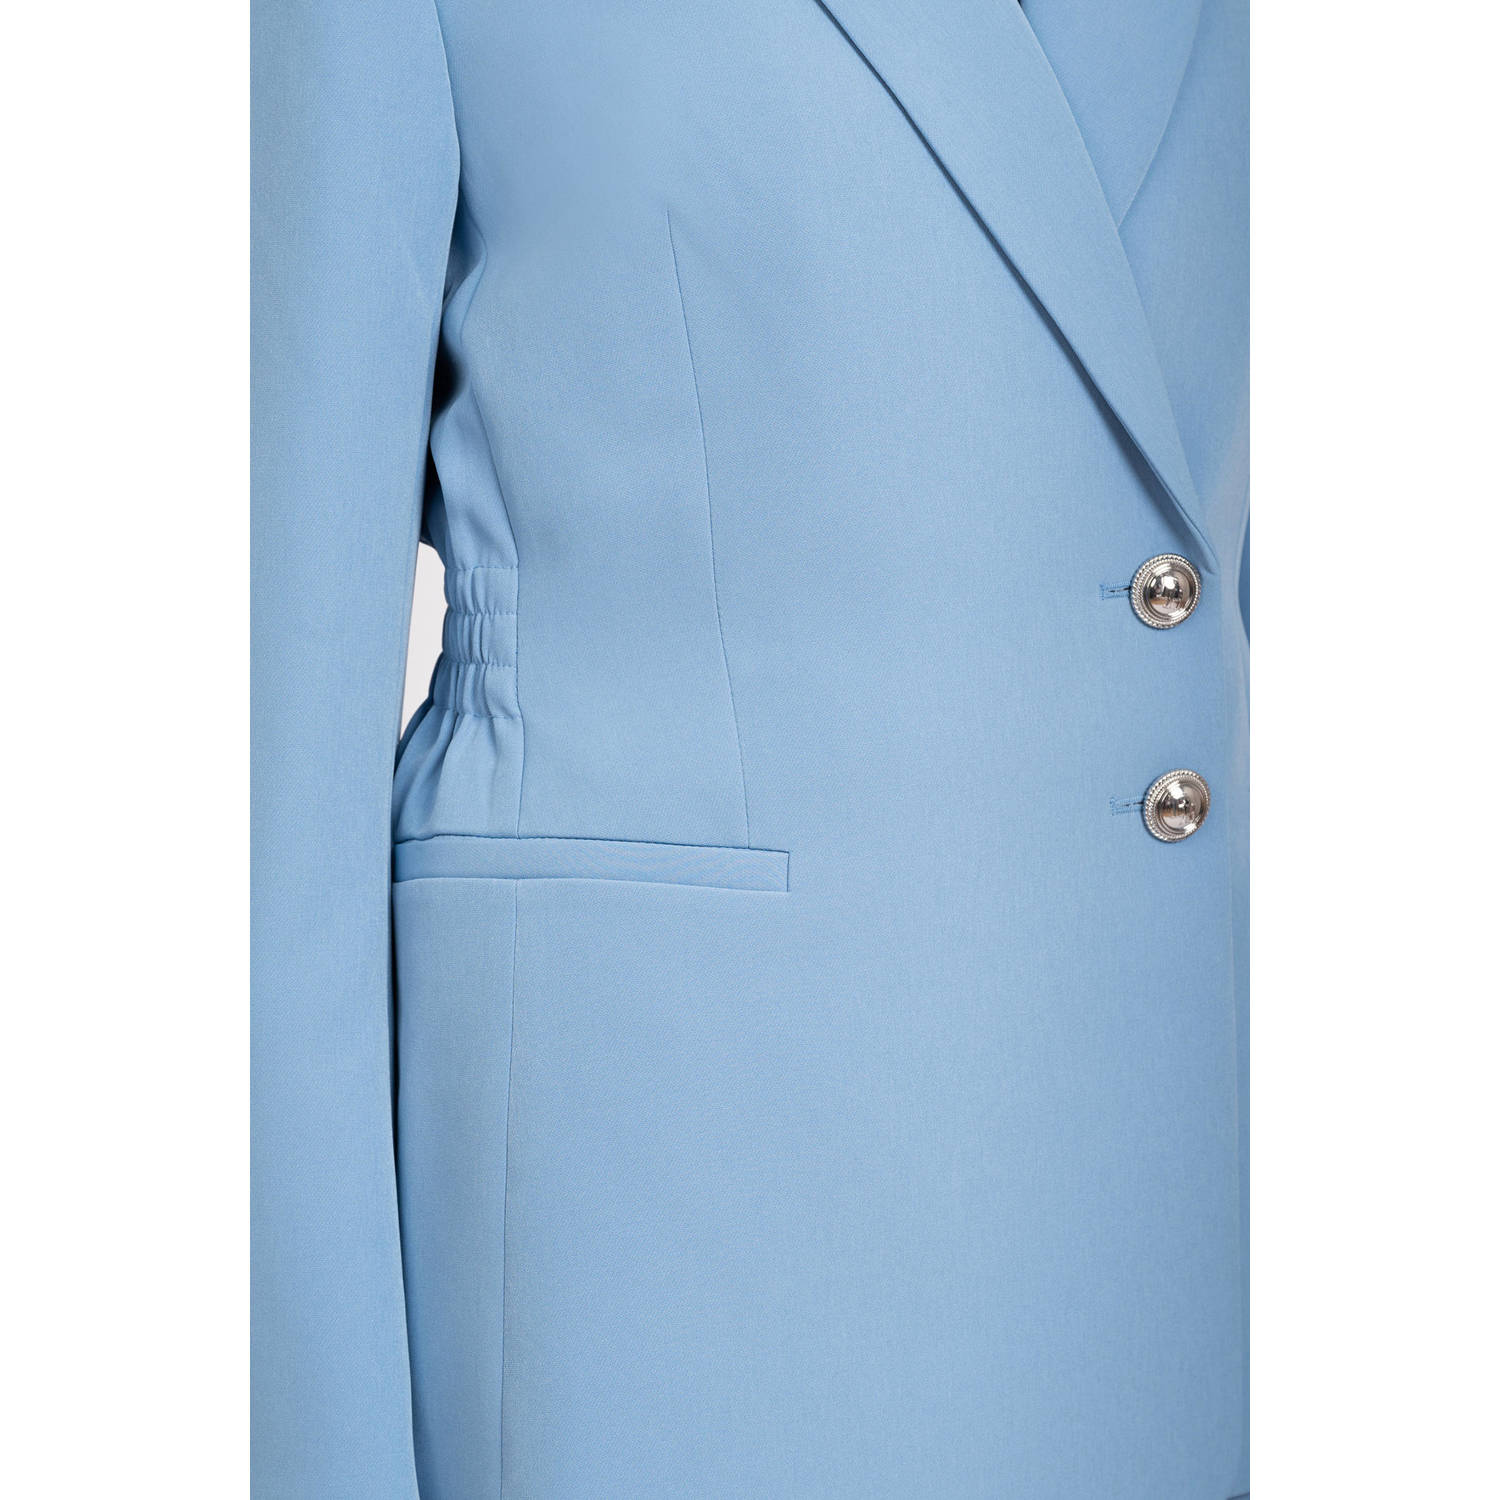 Fifth House x Chantal Janzen getailleerde blazer Avril blauw